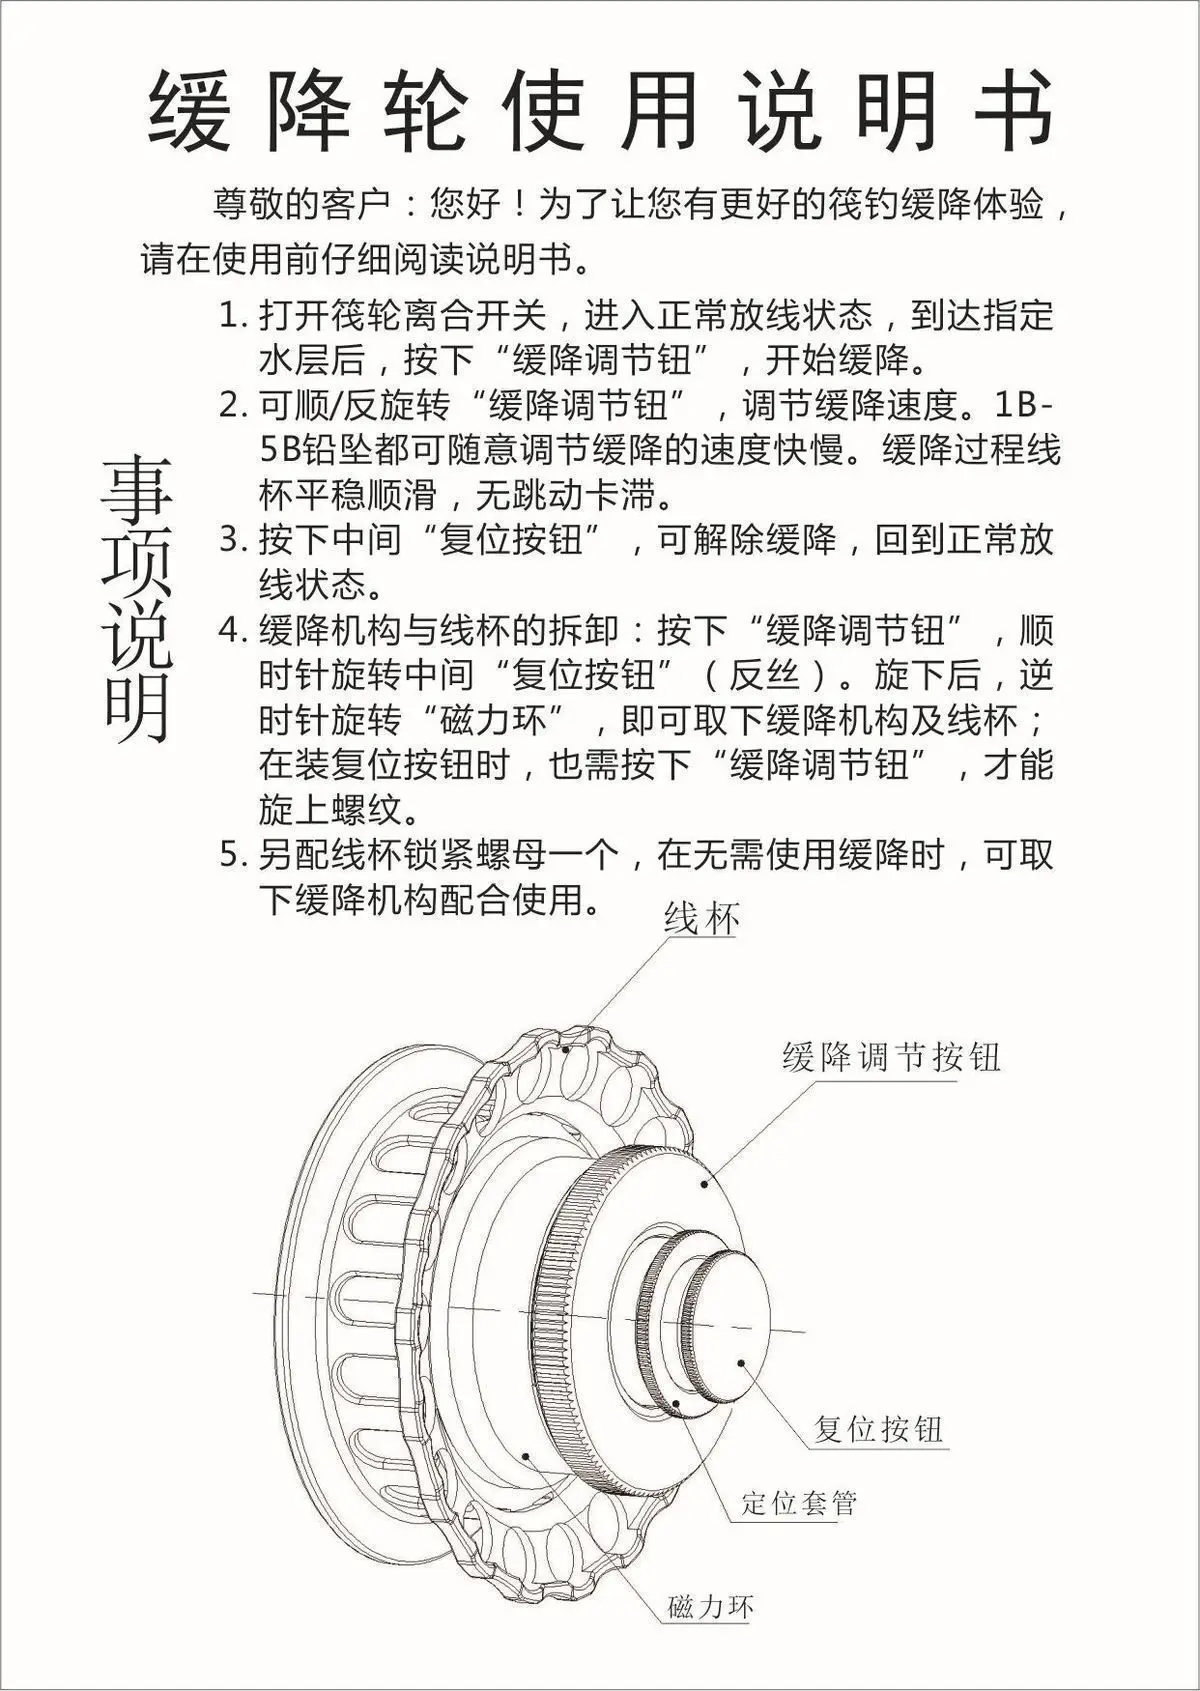 Taoyuan HD-S65 один Бонд падение номер часть показать катушка спиннинга для лодки план колеса розетки метров номер клапан шины быть в плохой свет Disp